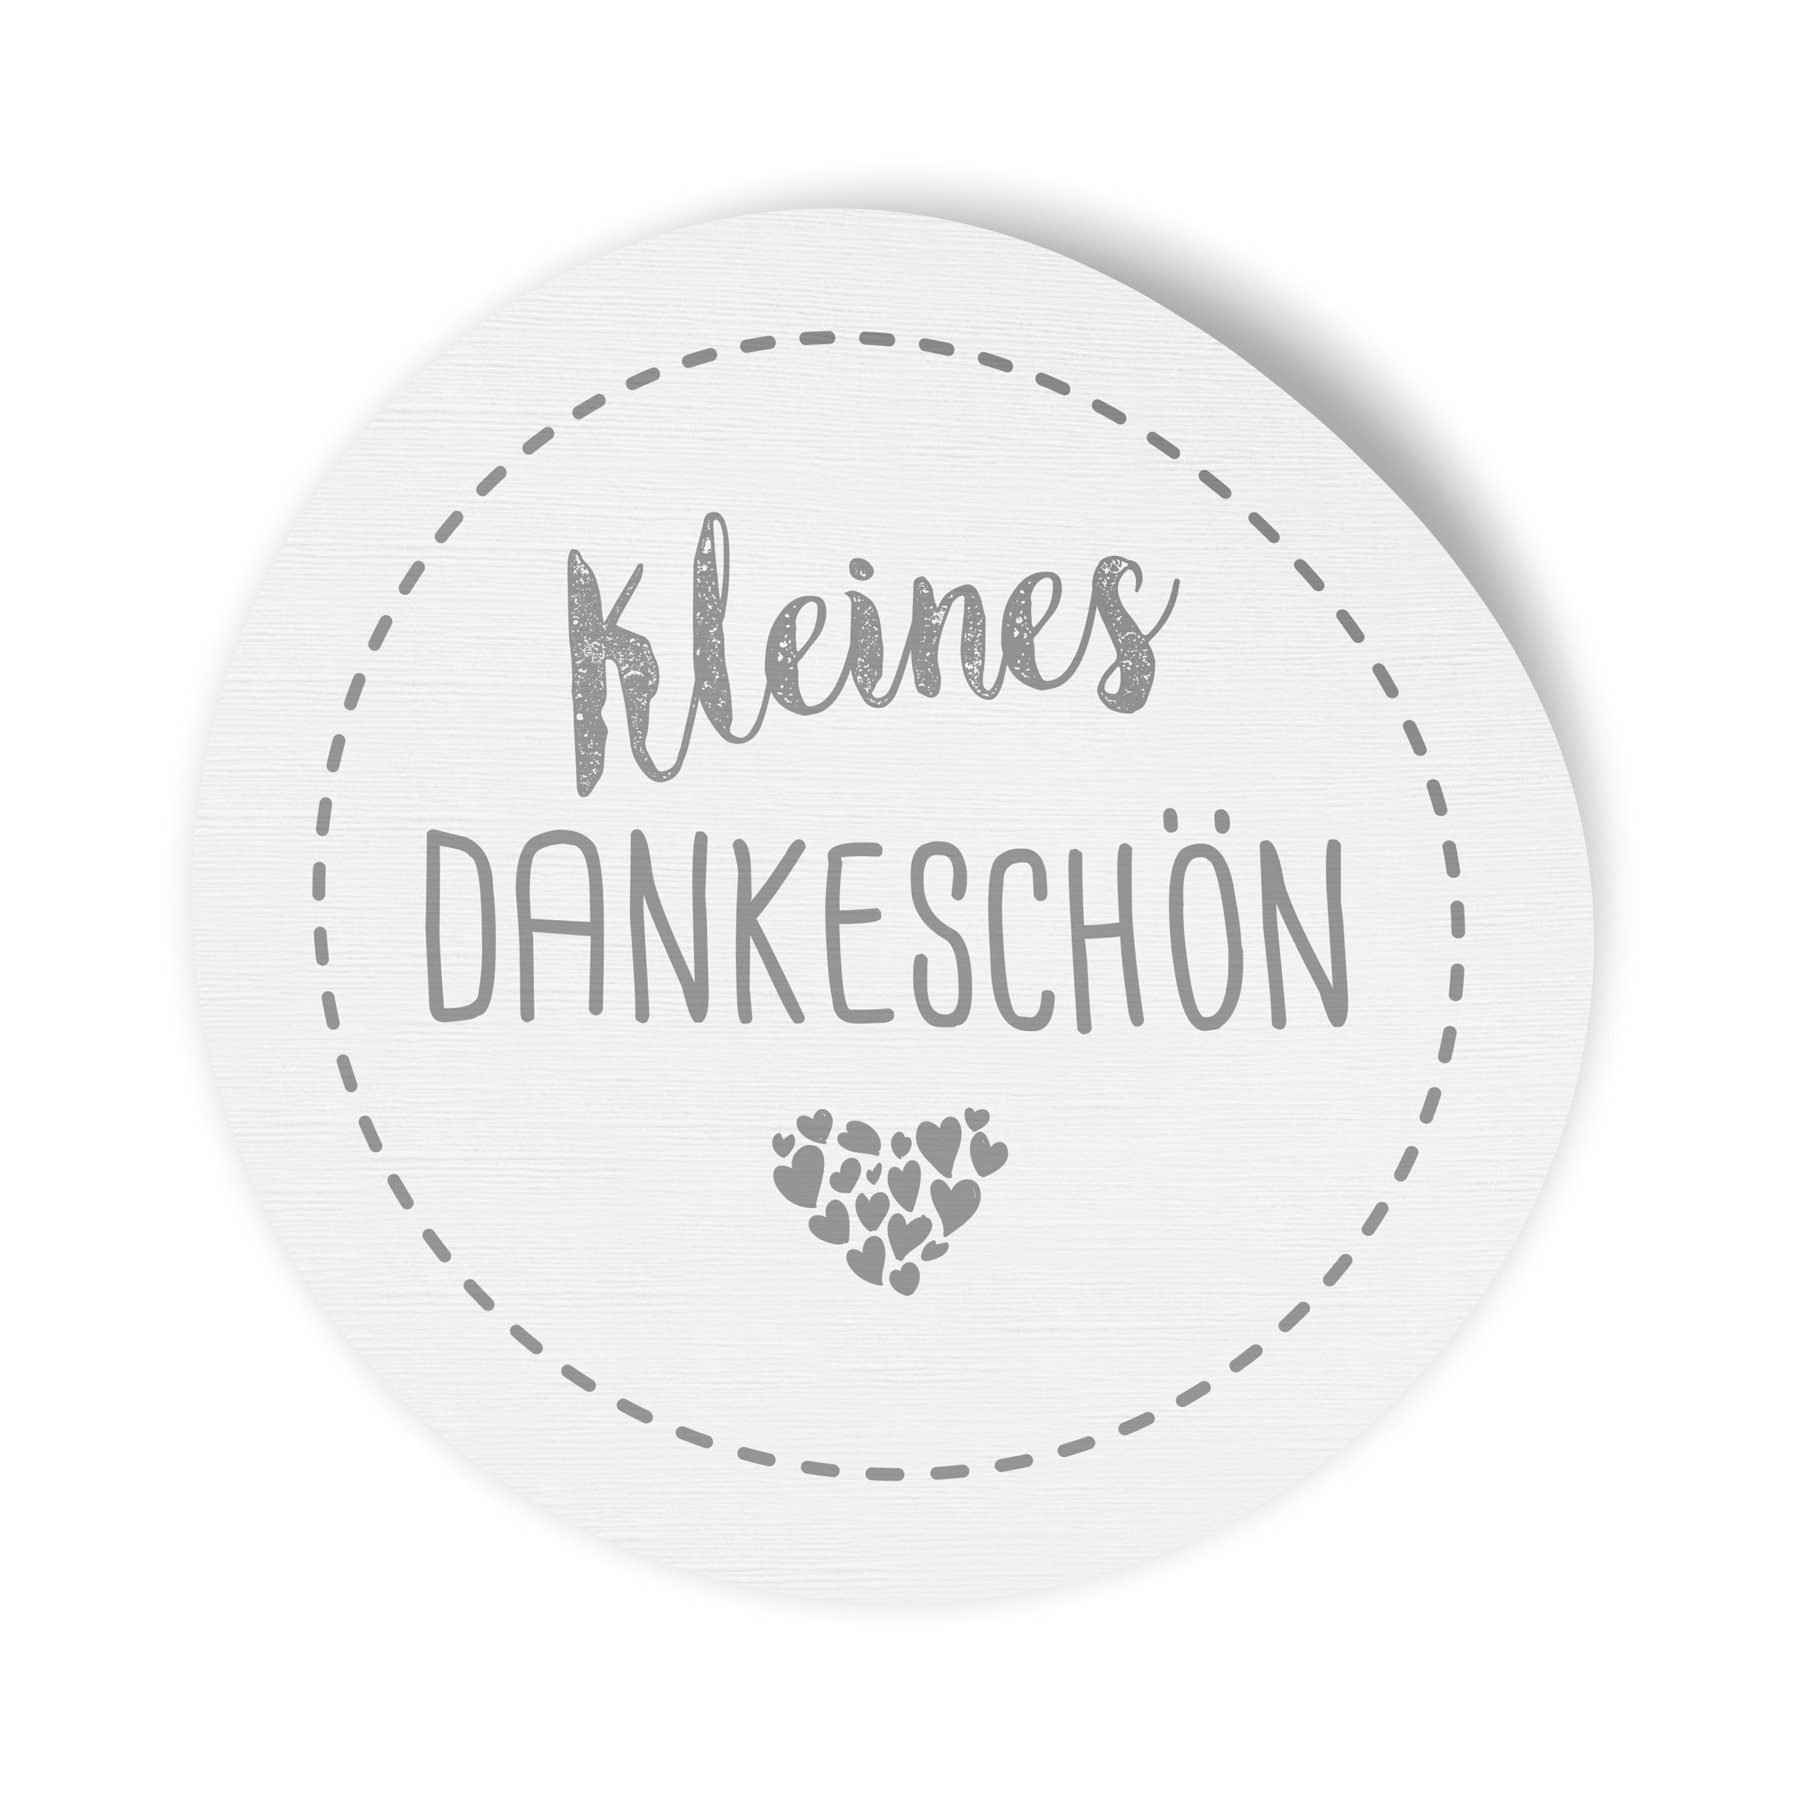 itenga Aufkleber 24x Sticker Aufkleber Kleines Dankeschön Weiß, Durchmesser 2,5 cm (Mot